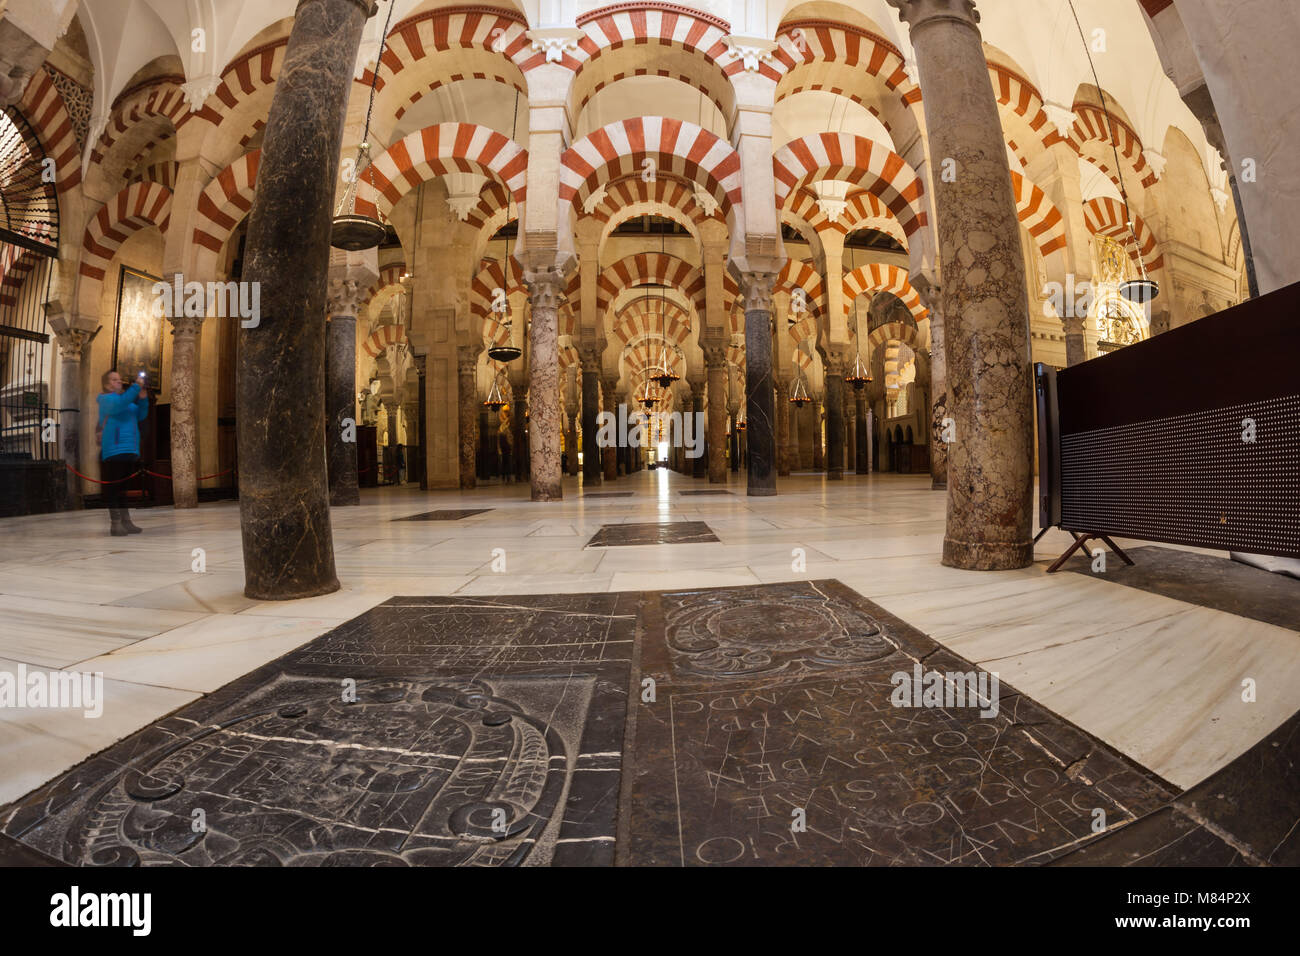 Innenraum der Kathedrale von Córdoba Spanien die ehemalige Moschee und seinen vielen Torbögen und glasauflagen Stockfoto